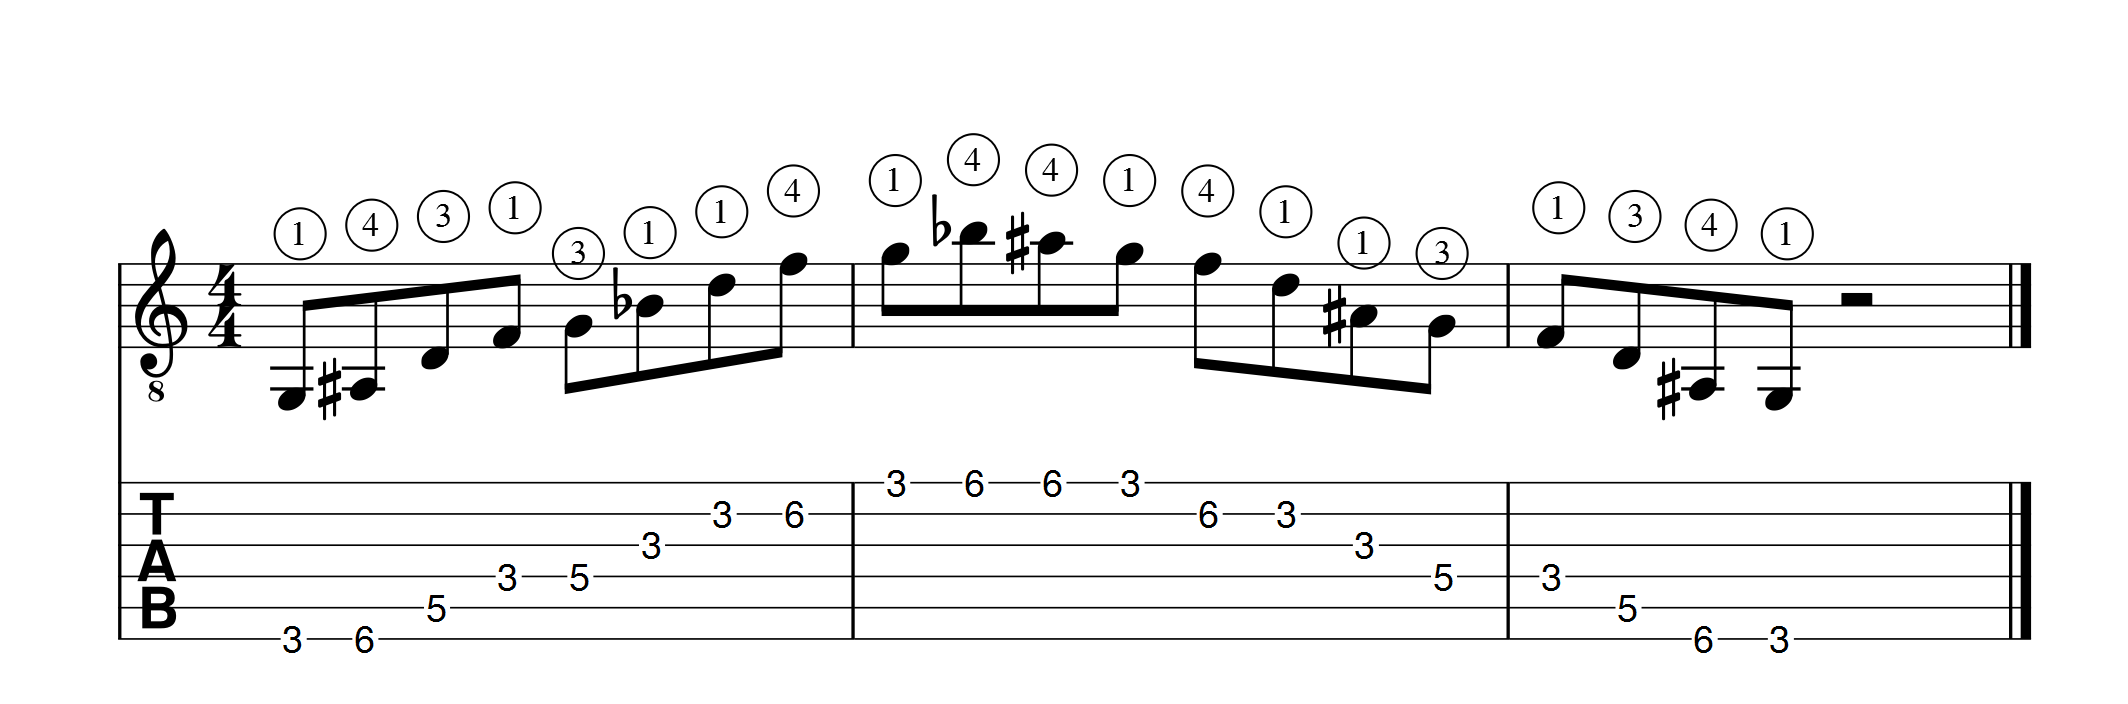 sol mineur 7 position 1 verticale 12 apprendre la guitare